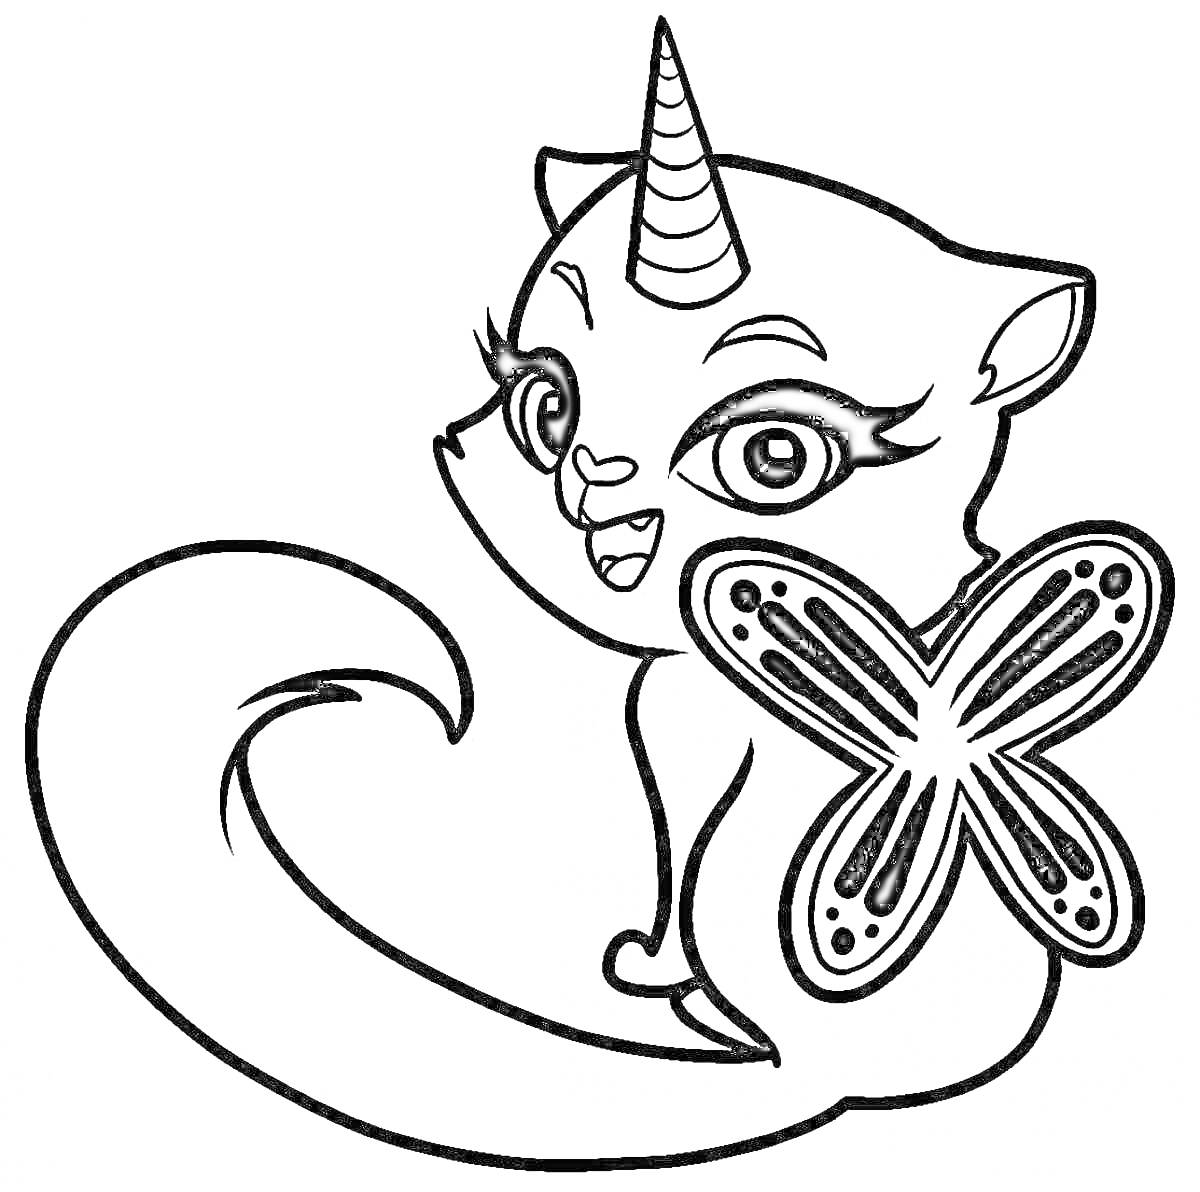 Раскраска Кот с рогом единорога и бабочкой на хвосте